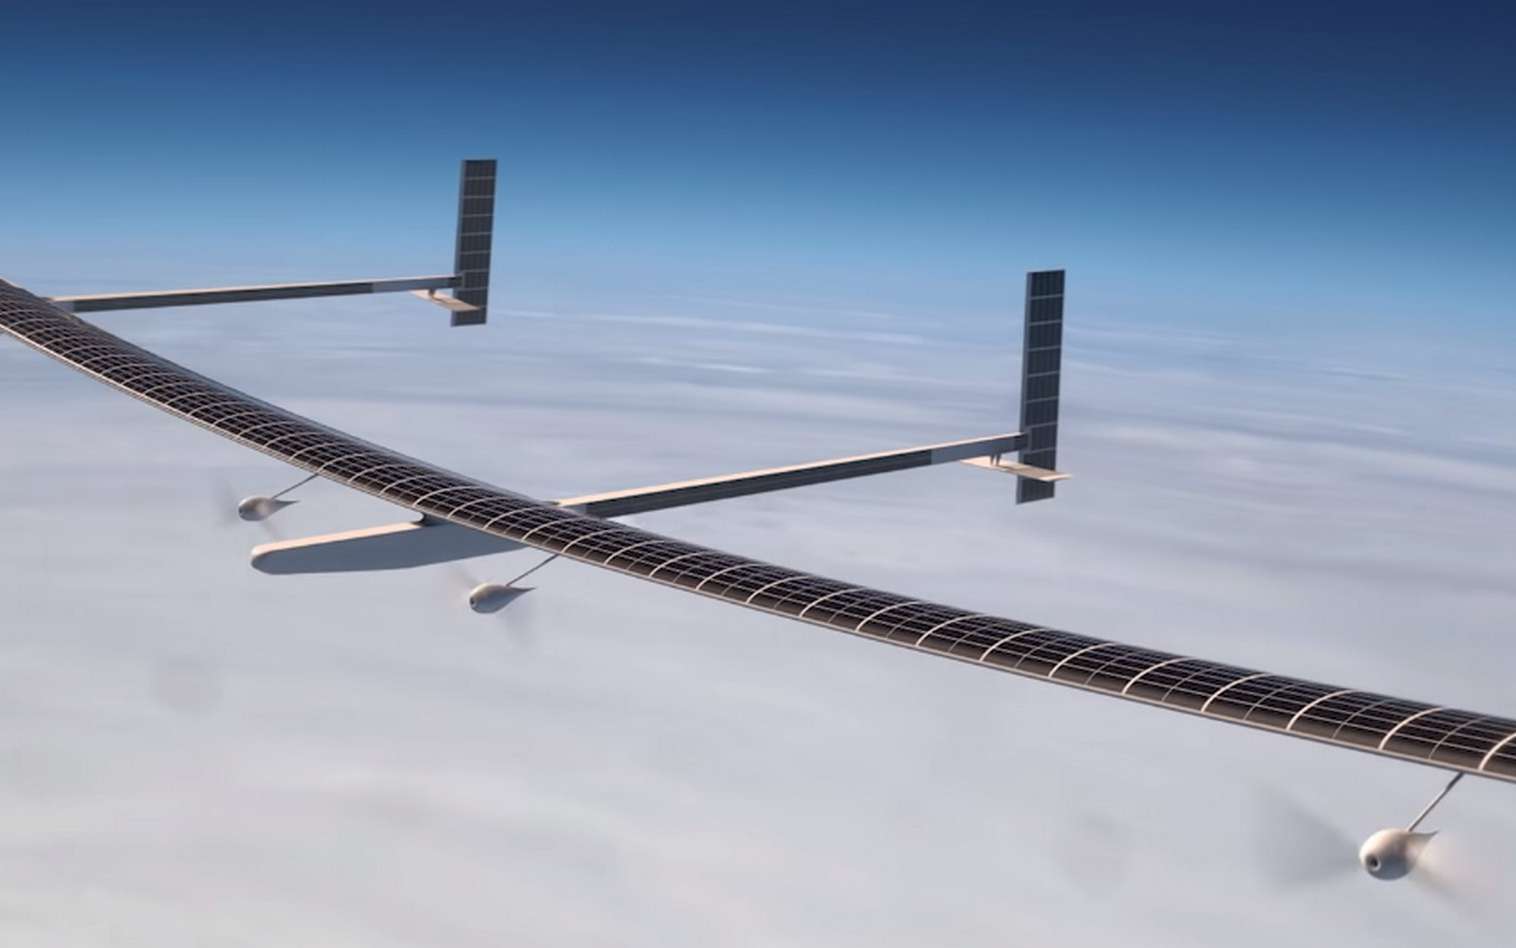 Une vue simulée du drone solaire Odysseus de Boeing. © Aurora Flight Sciences